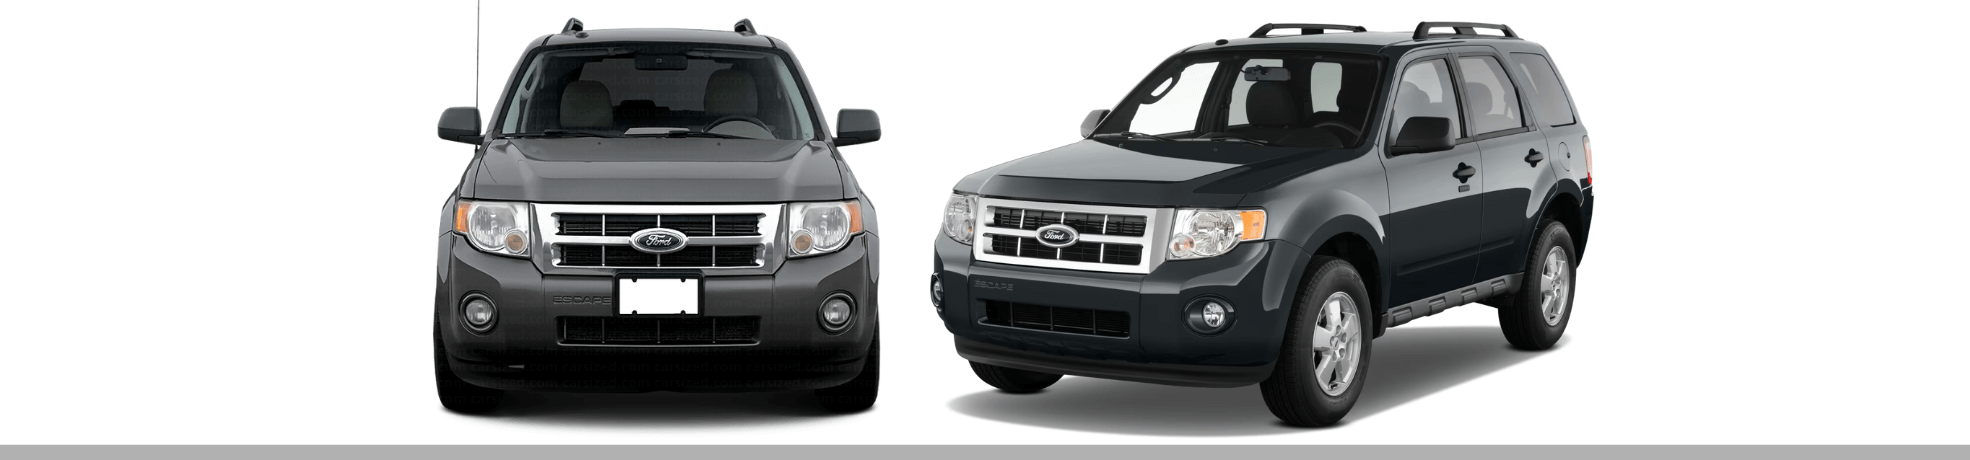 Ford Escape 2008-2012